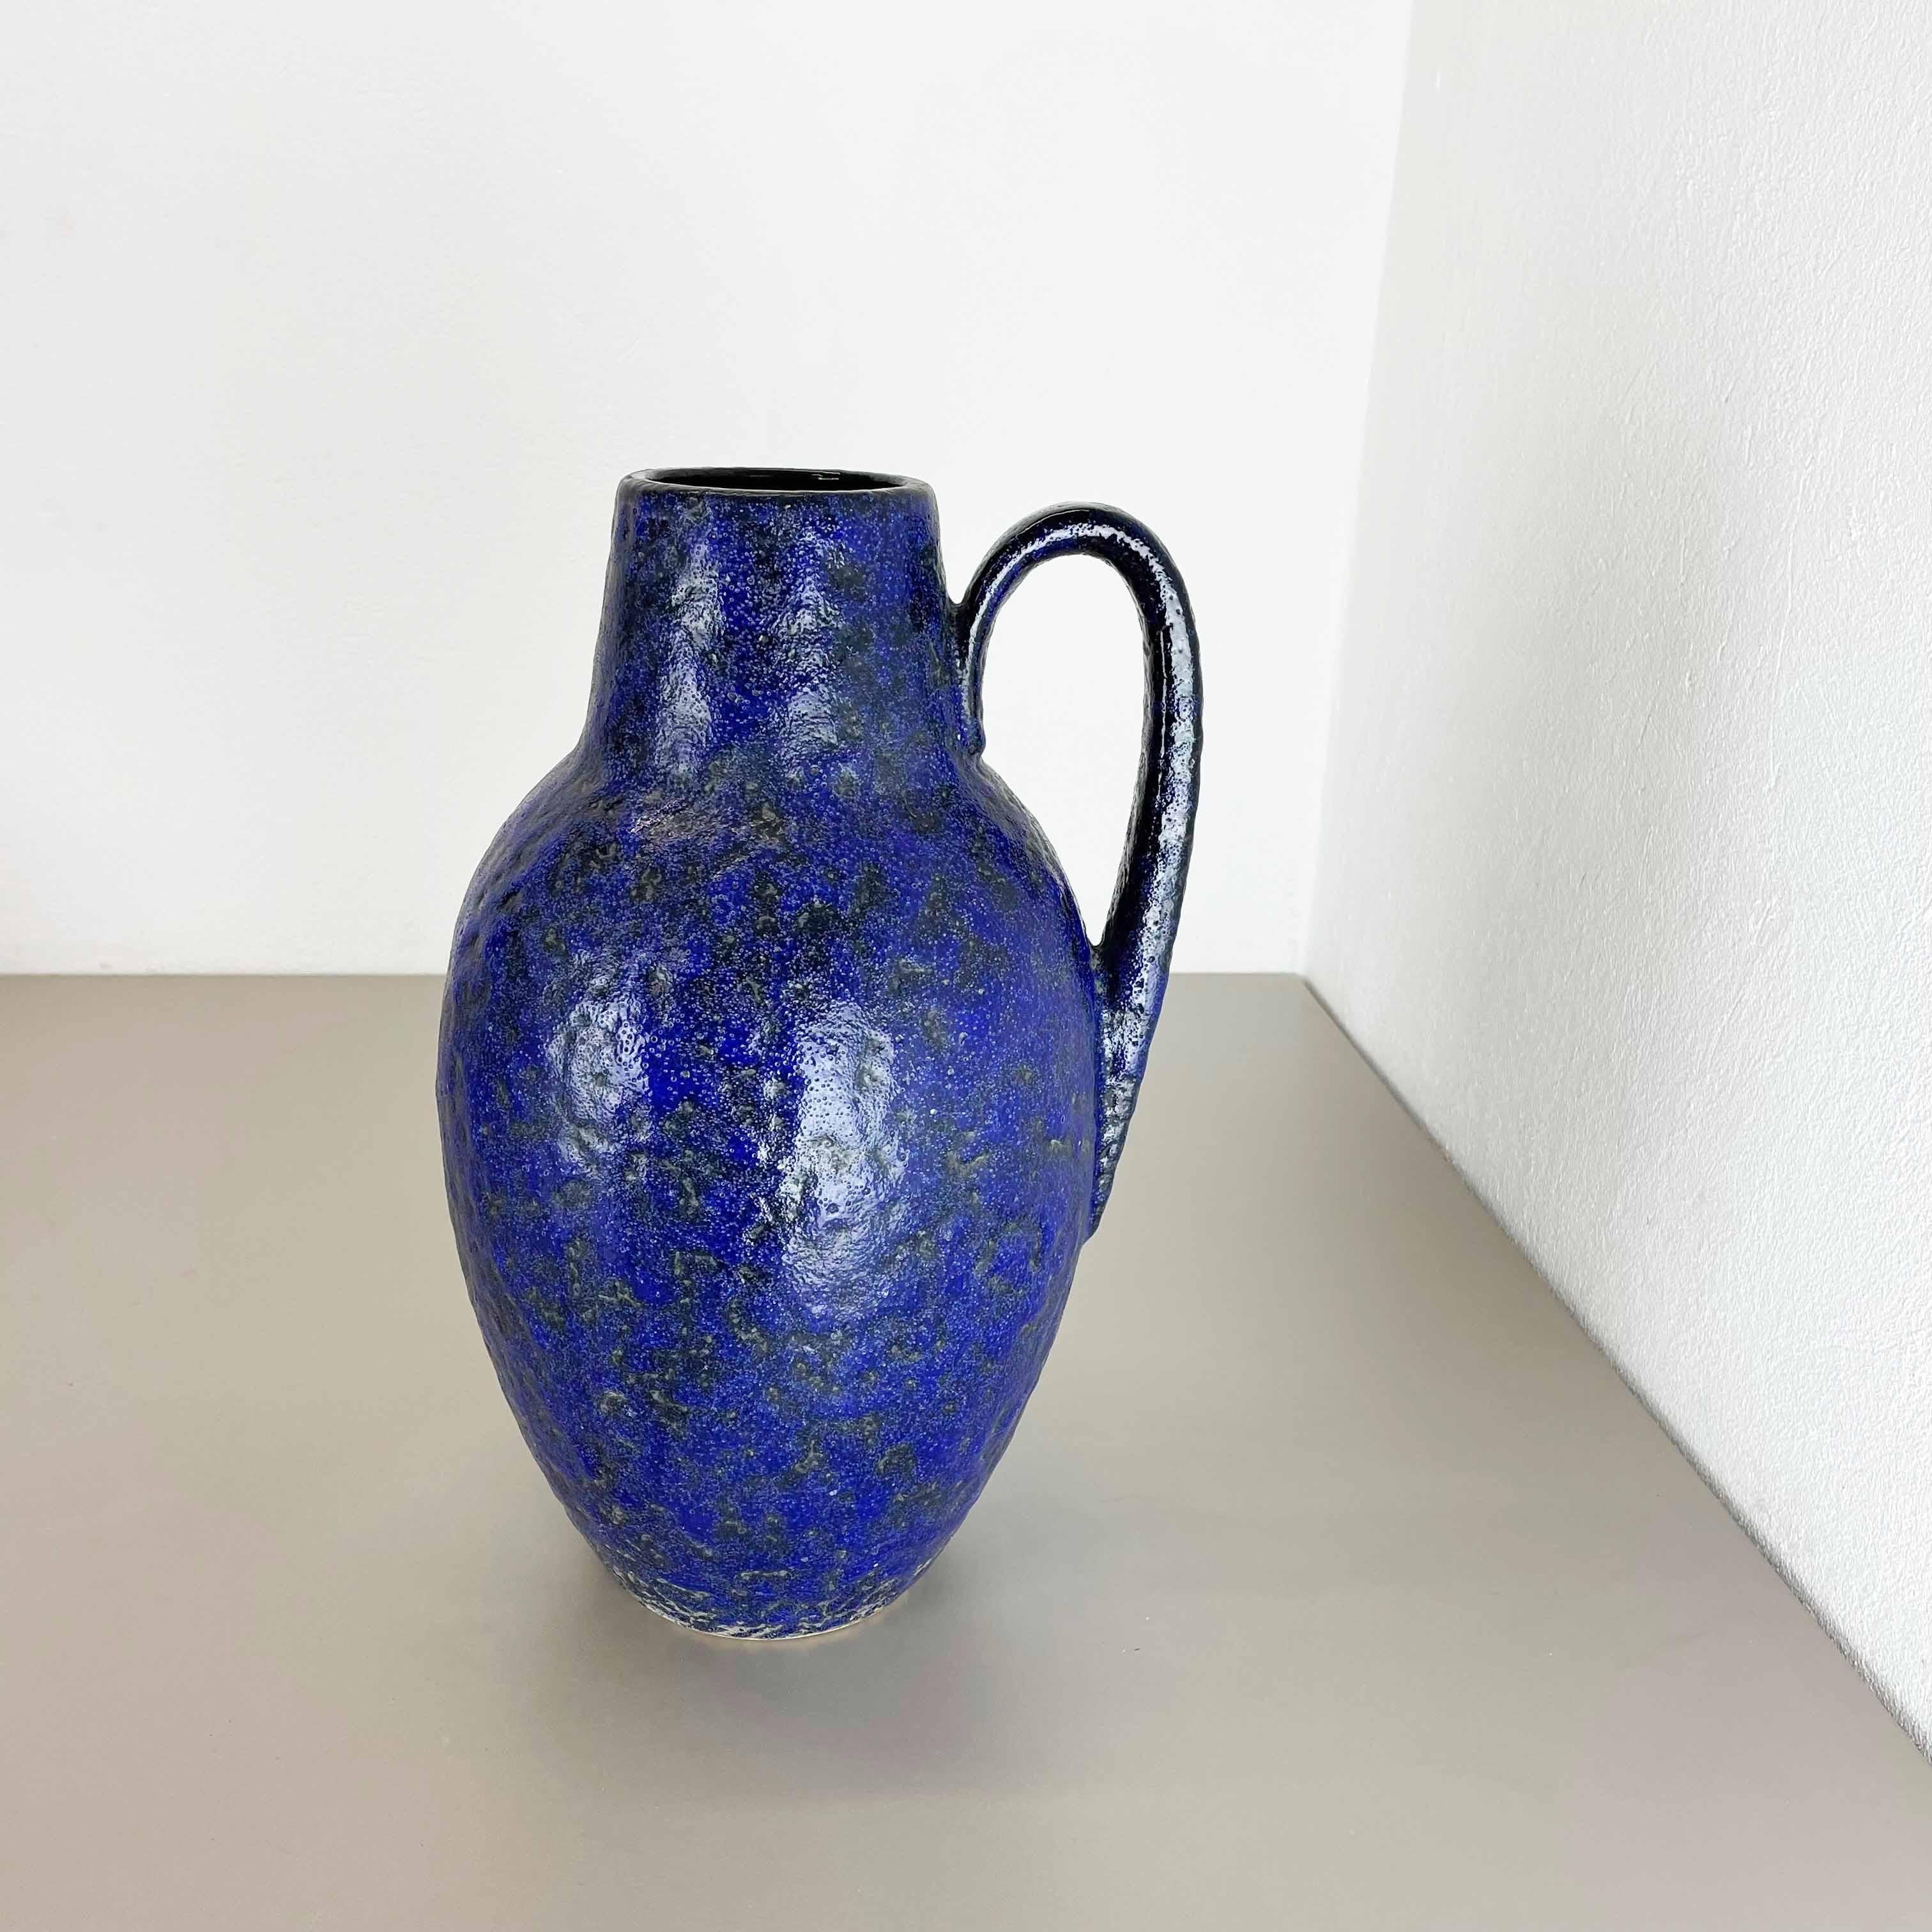 Artikel:

Fette Lavakunstvase, schwere brutalistische Glasur


Produzent:

Scheurich, Deutschland



Jahrzehnt:

1970s




Diese originelle Vintage-Vase wurde in den 1970er Jahren in Deutschland hergestellt. Sie ist aus Keramik in